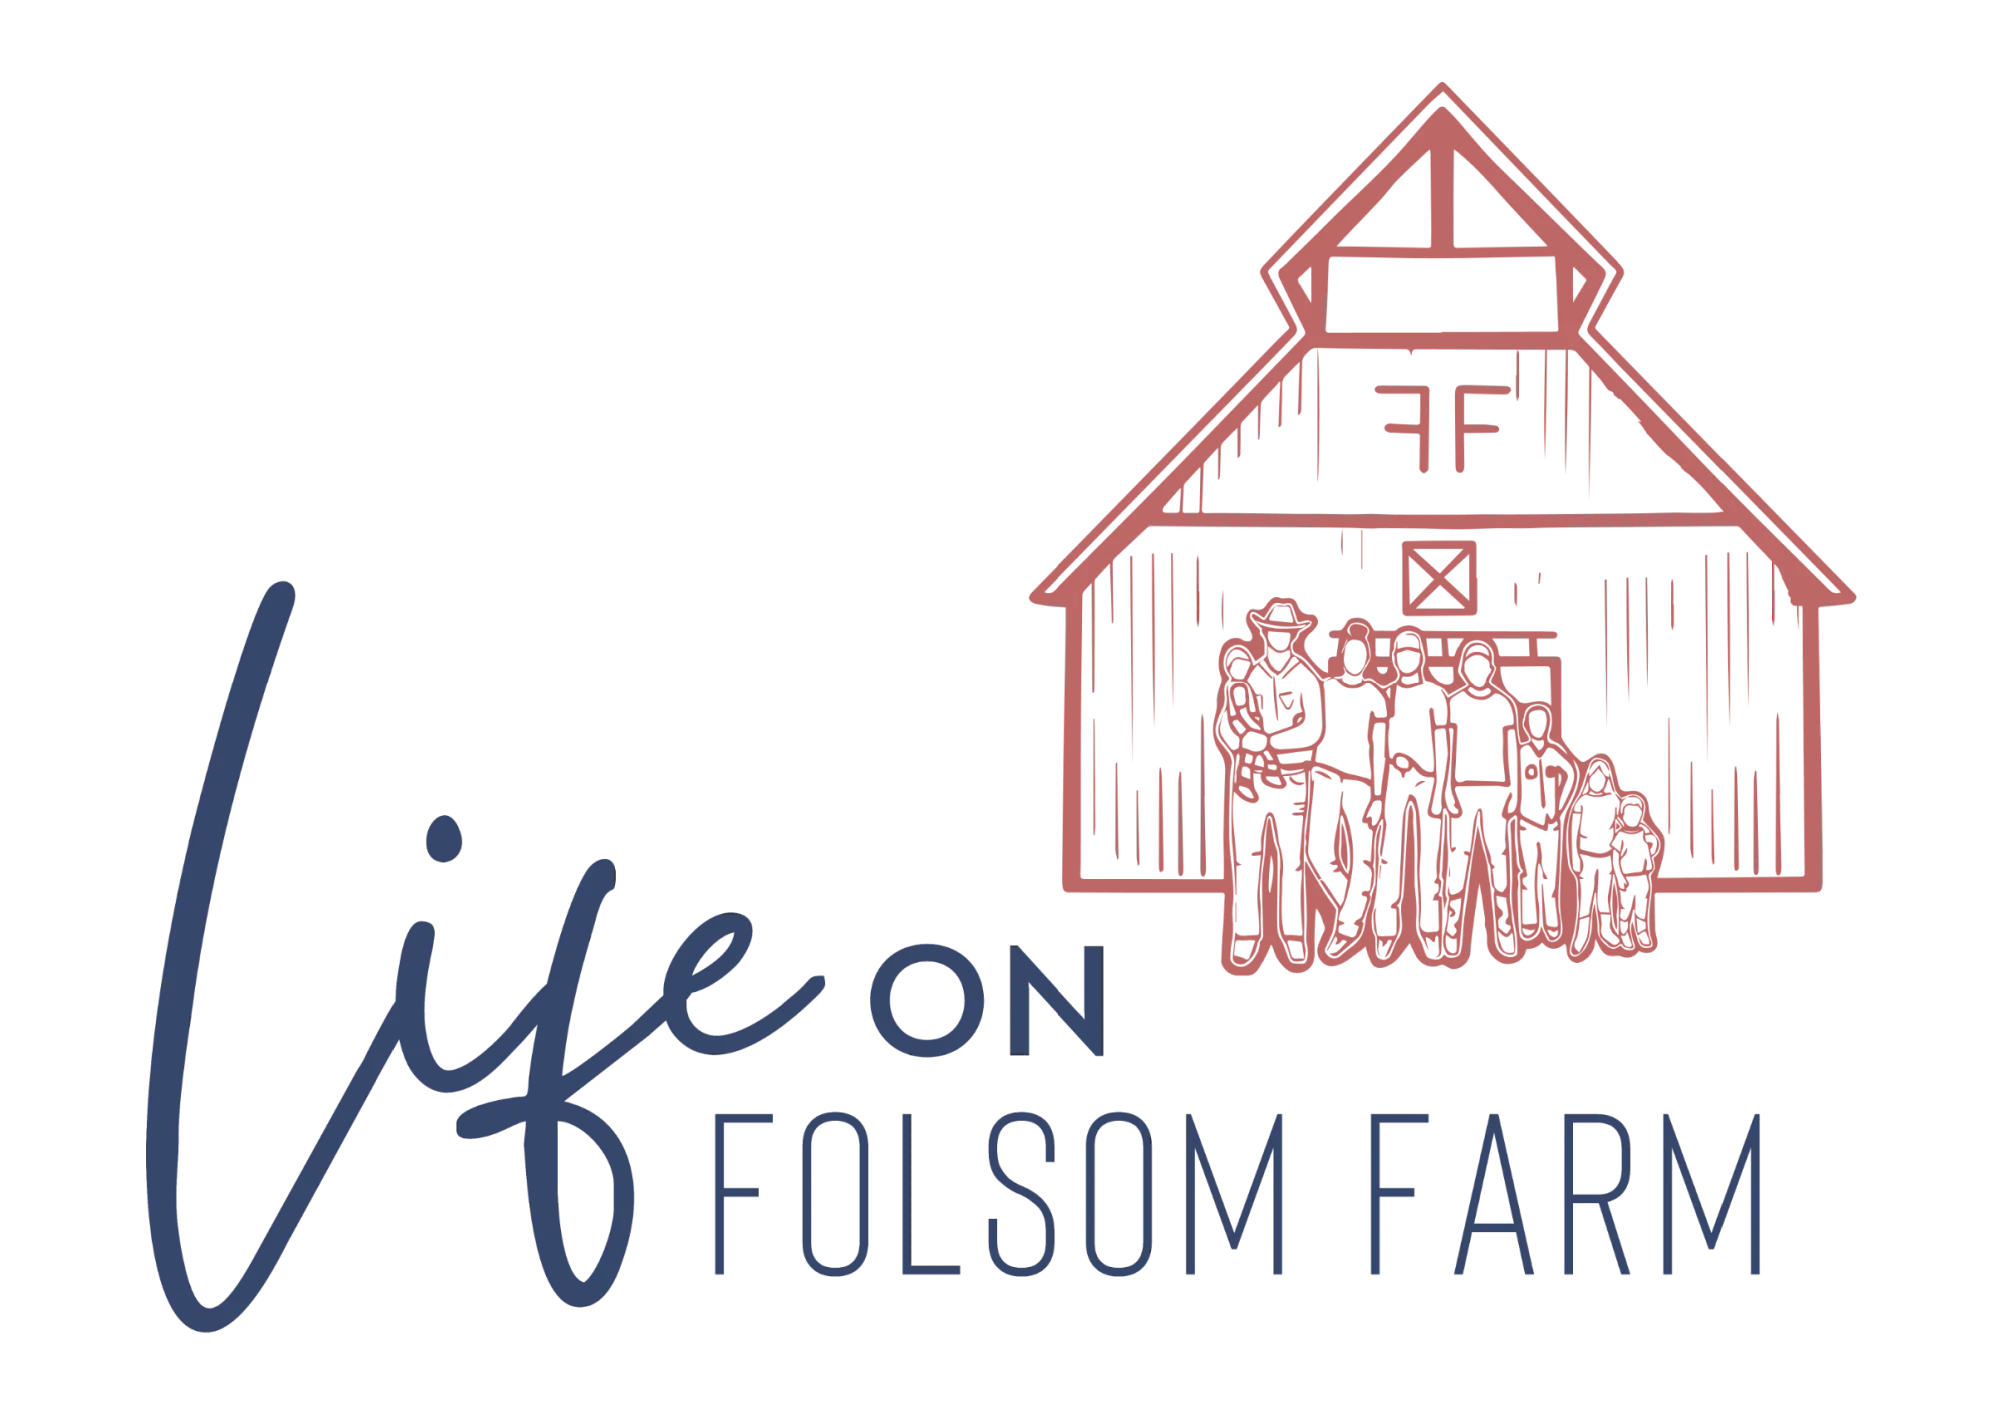 Life On Folsom Farm